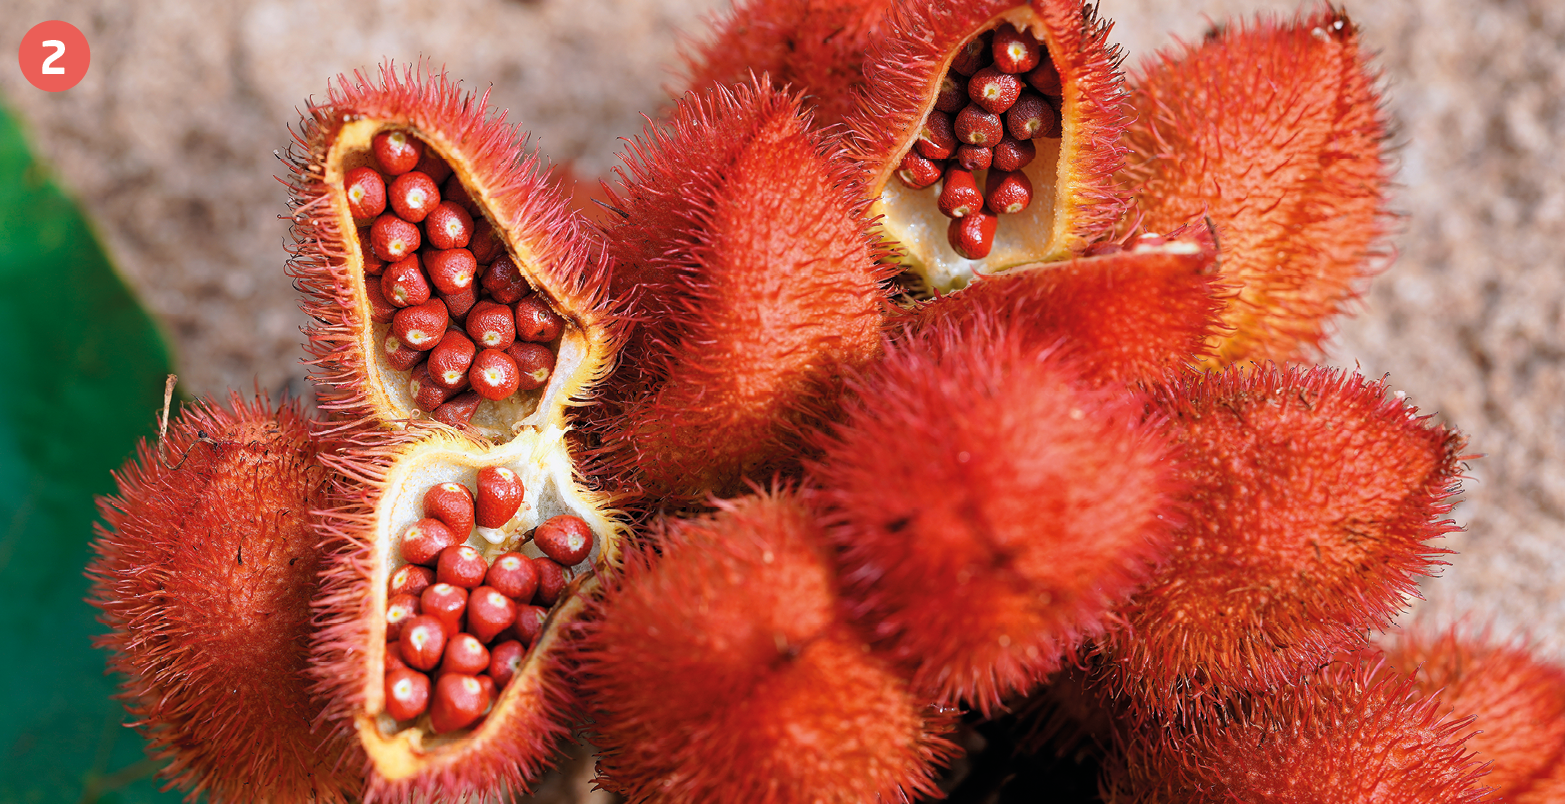 Fotografia. Destaque para sementes vermelhas e pequenas dentro de cápsulas arredondadas e com cascas de fios finos e vermelhos.